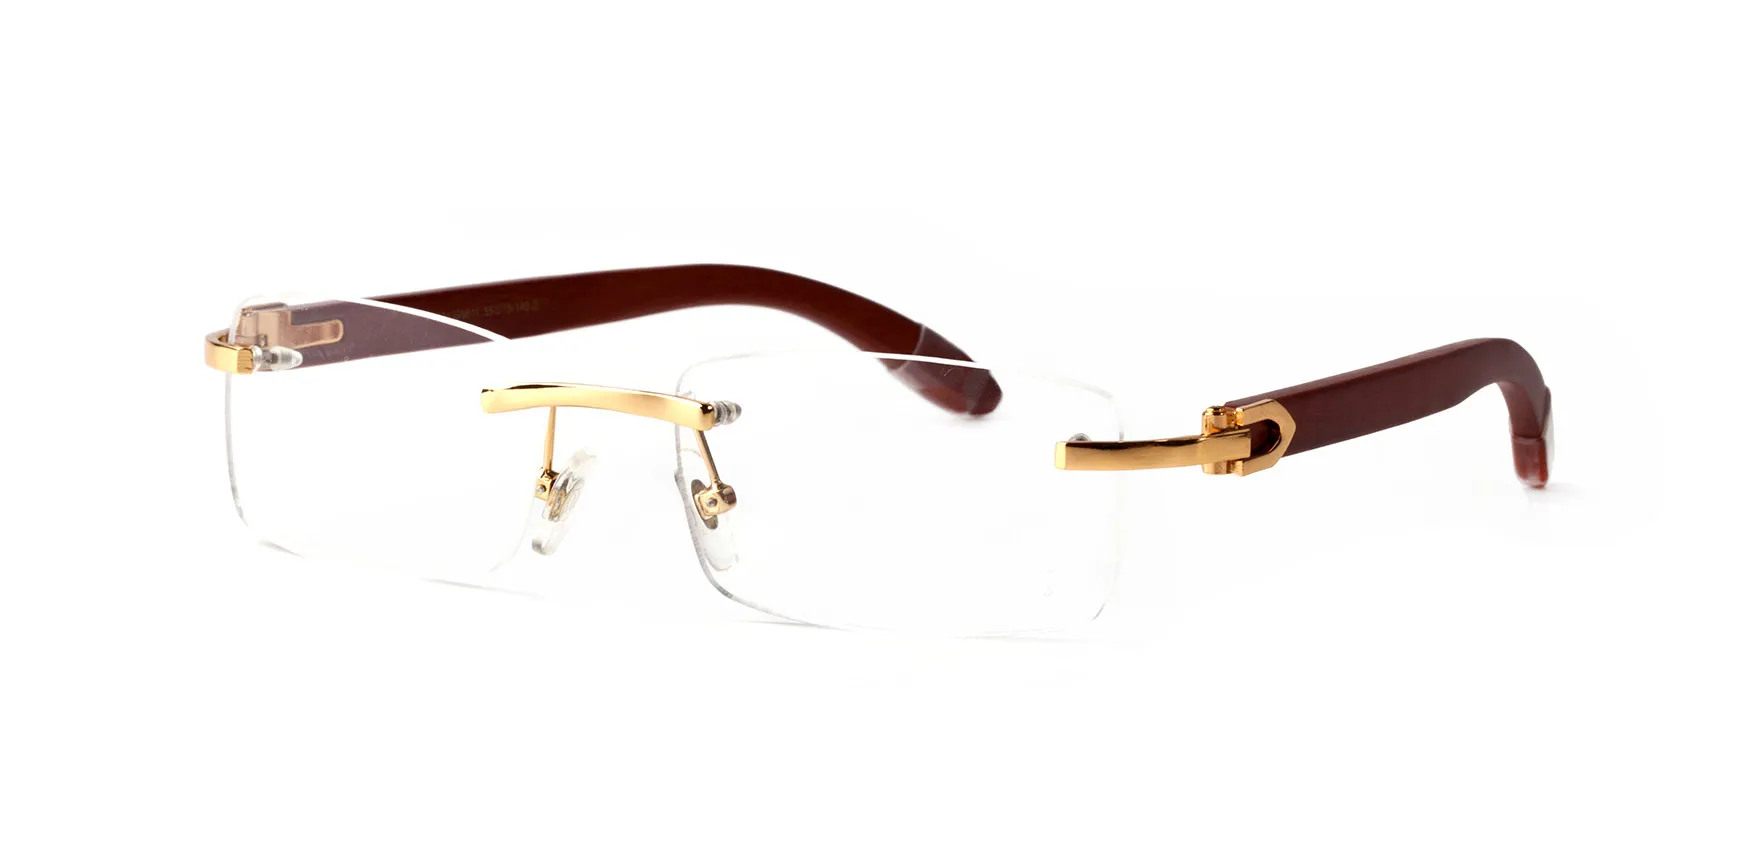 Nouveaux lunettes de soleil Buffalo Horn Sport Fashion Sun Gerres pour hommes Femmes Rimless Rectangle Bamboo Wood Eyeglass WEEWEAR avec boîtes CA321A